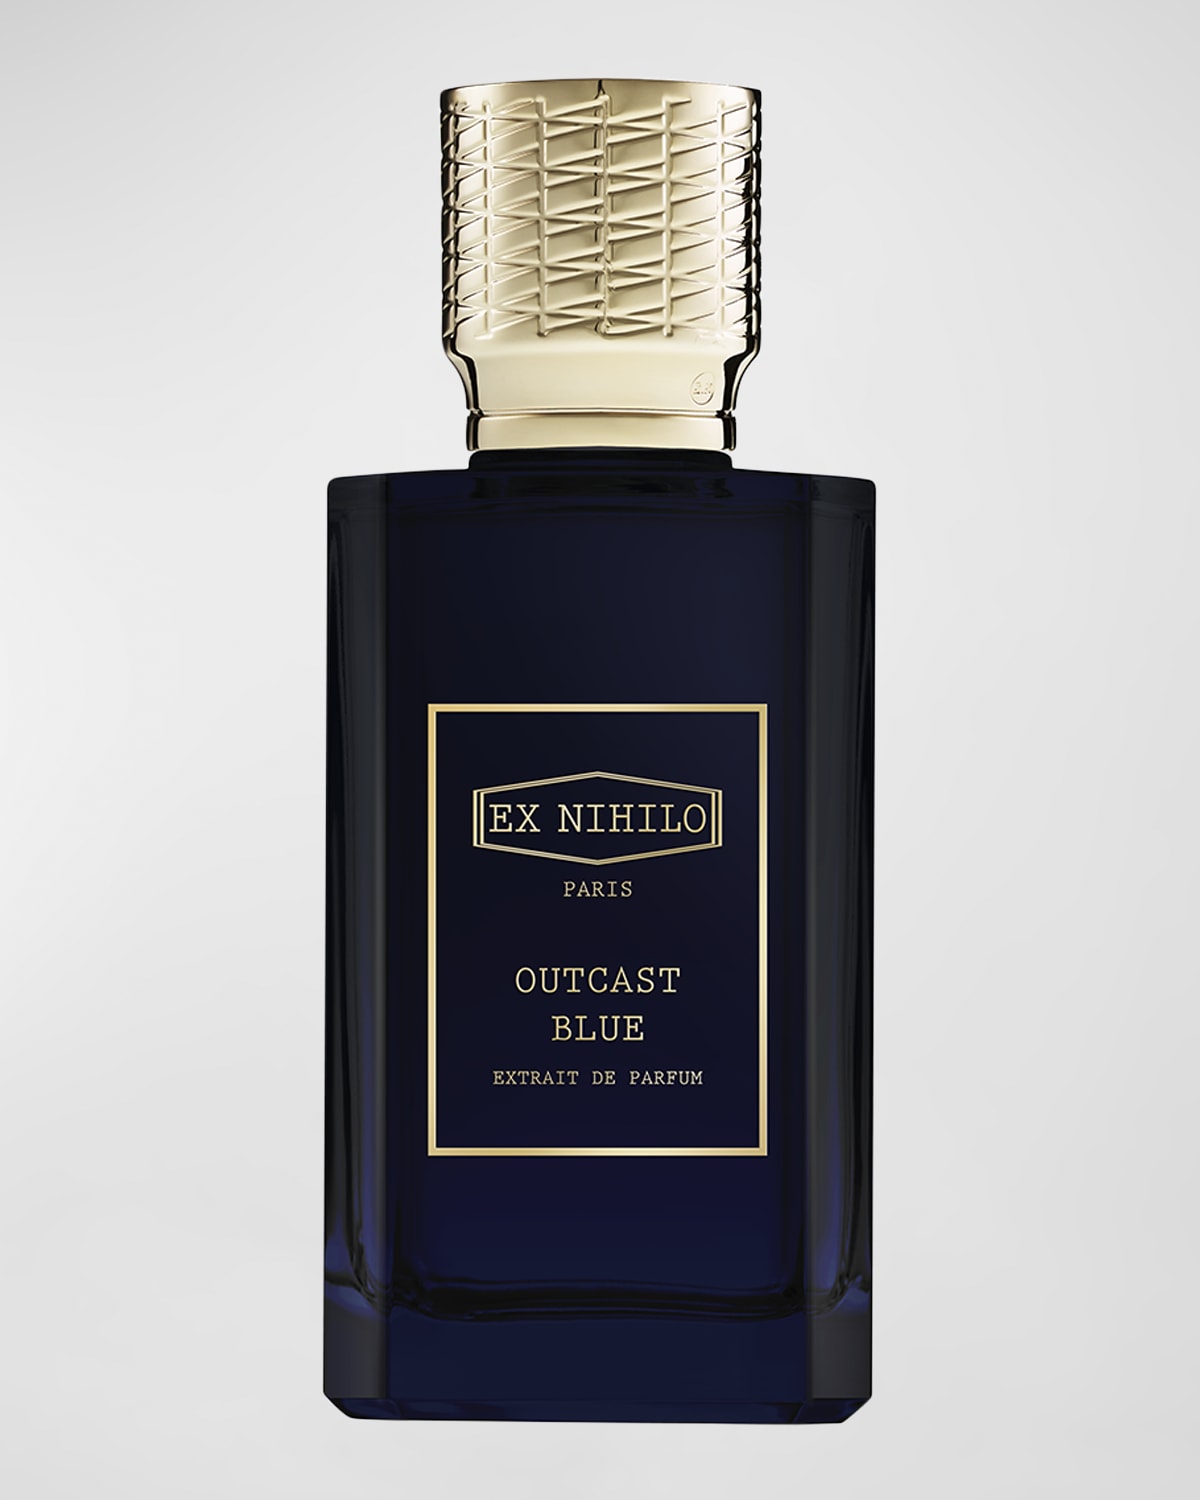 Outcast Blue Extrait de Parfum, 3.4 oz.